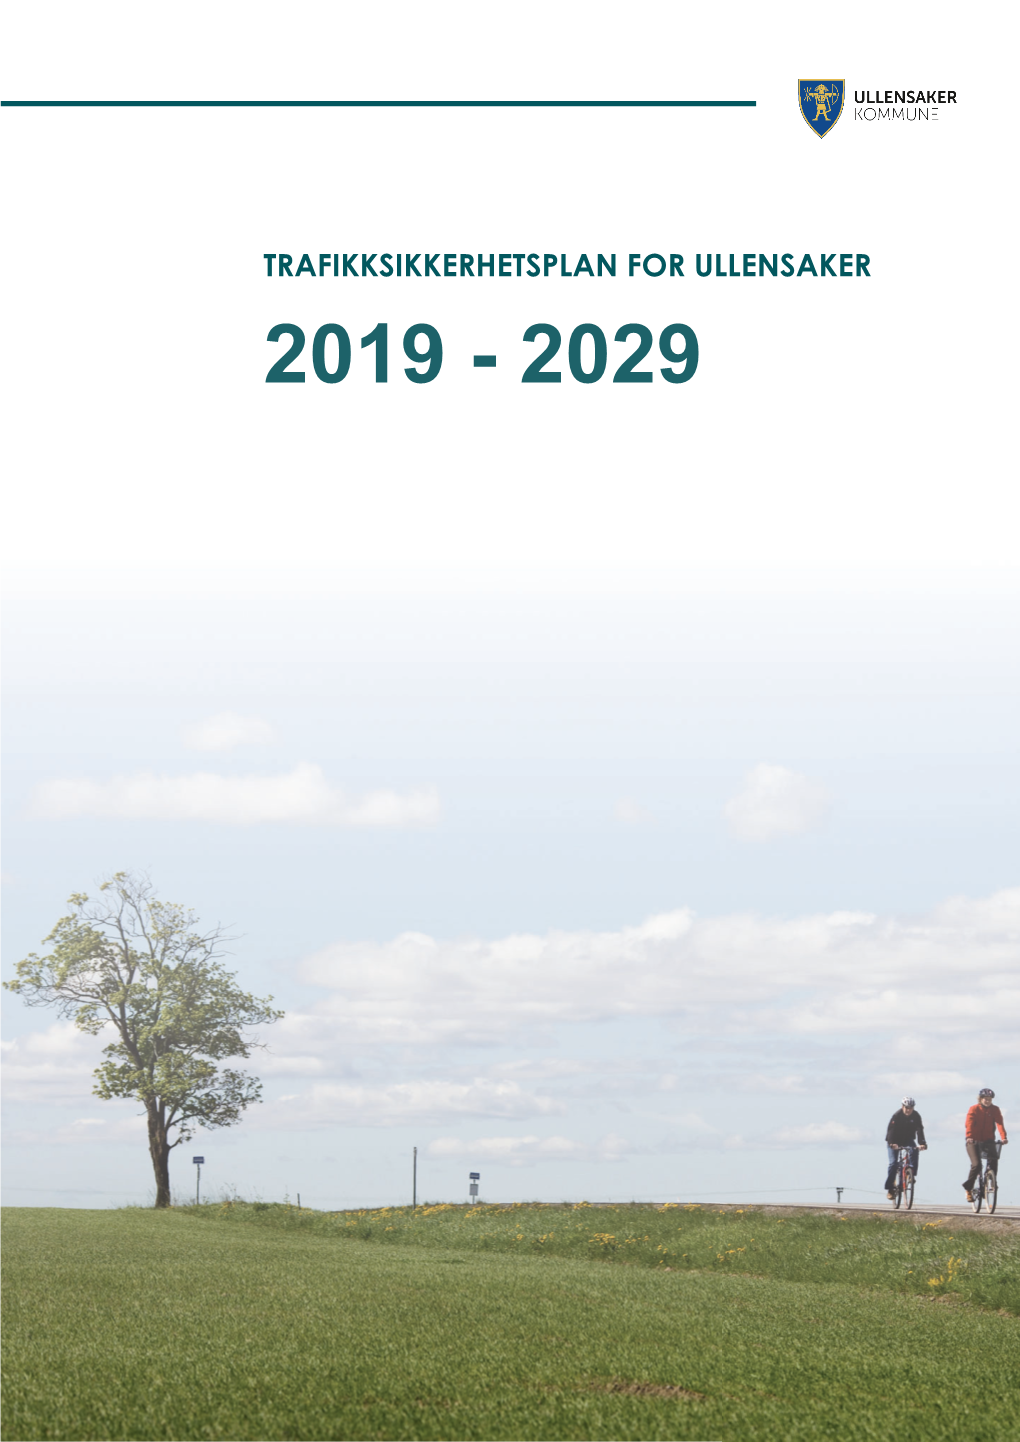 Trafikksikkerhetsplan for Ullensaker 2019 - 2029 Trafikksikkerhetsplan 2019 - 2029